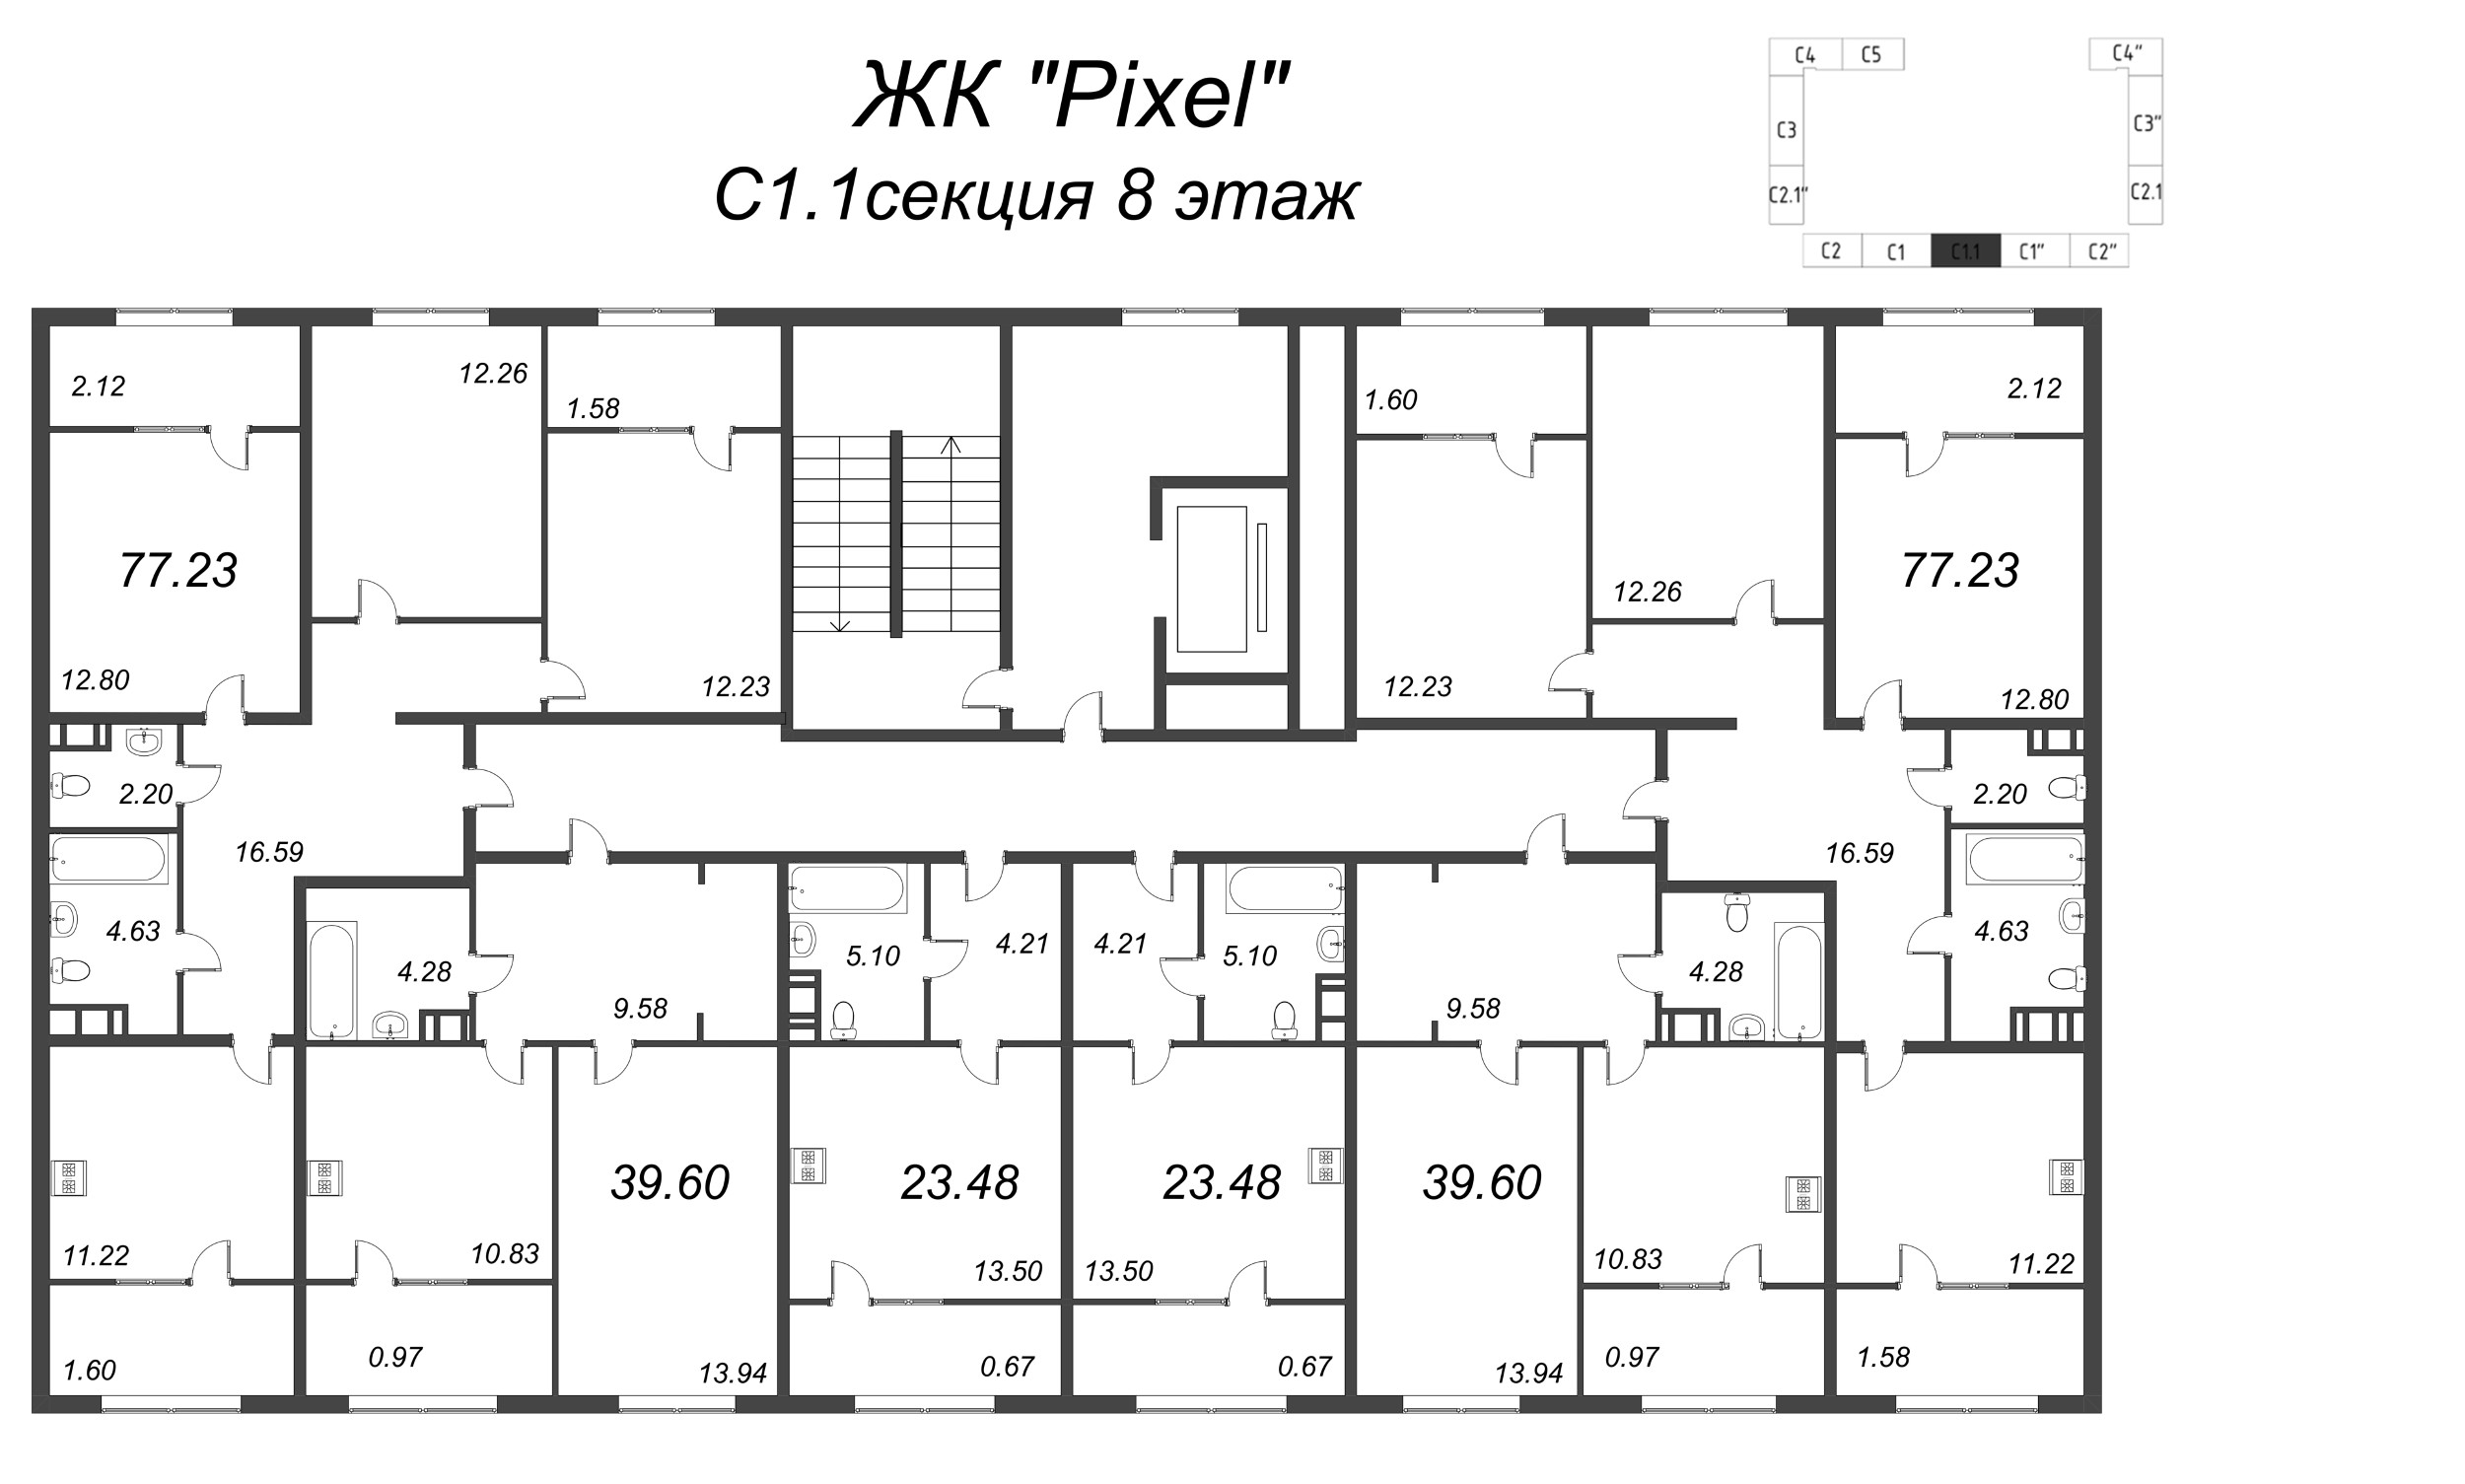 3-комнатная квартира, 85.48 м² в ЖК "Pixel" - планировка этажа